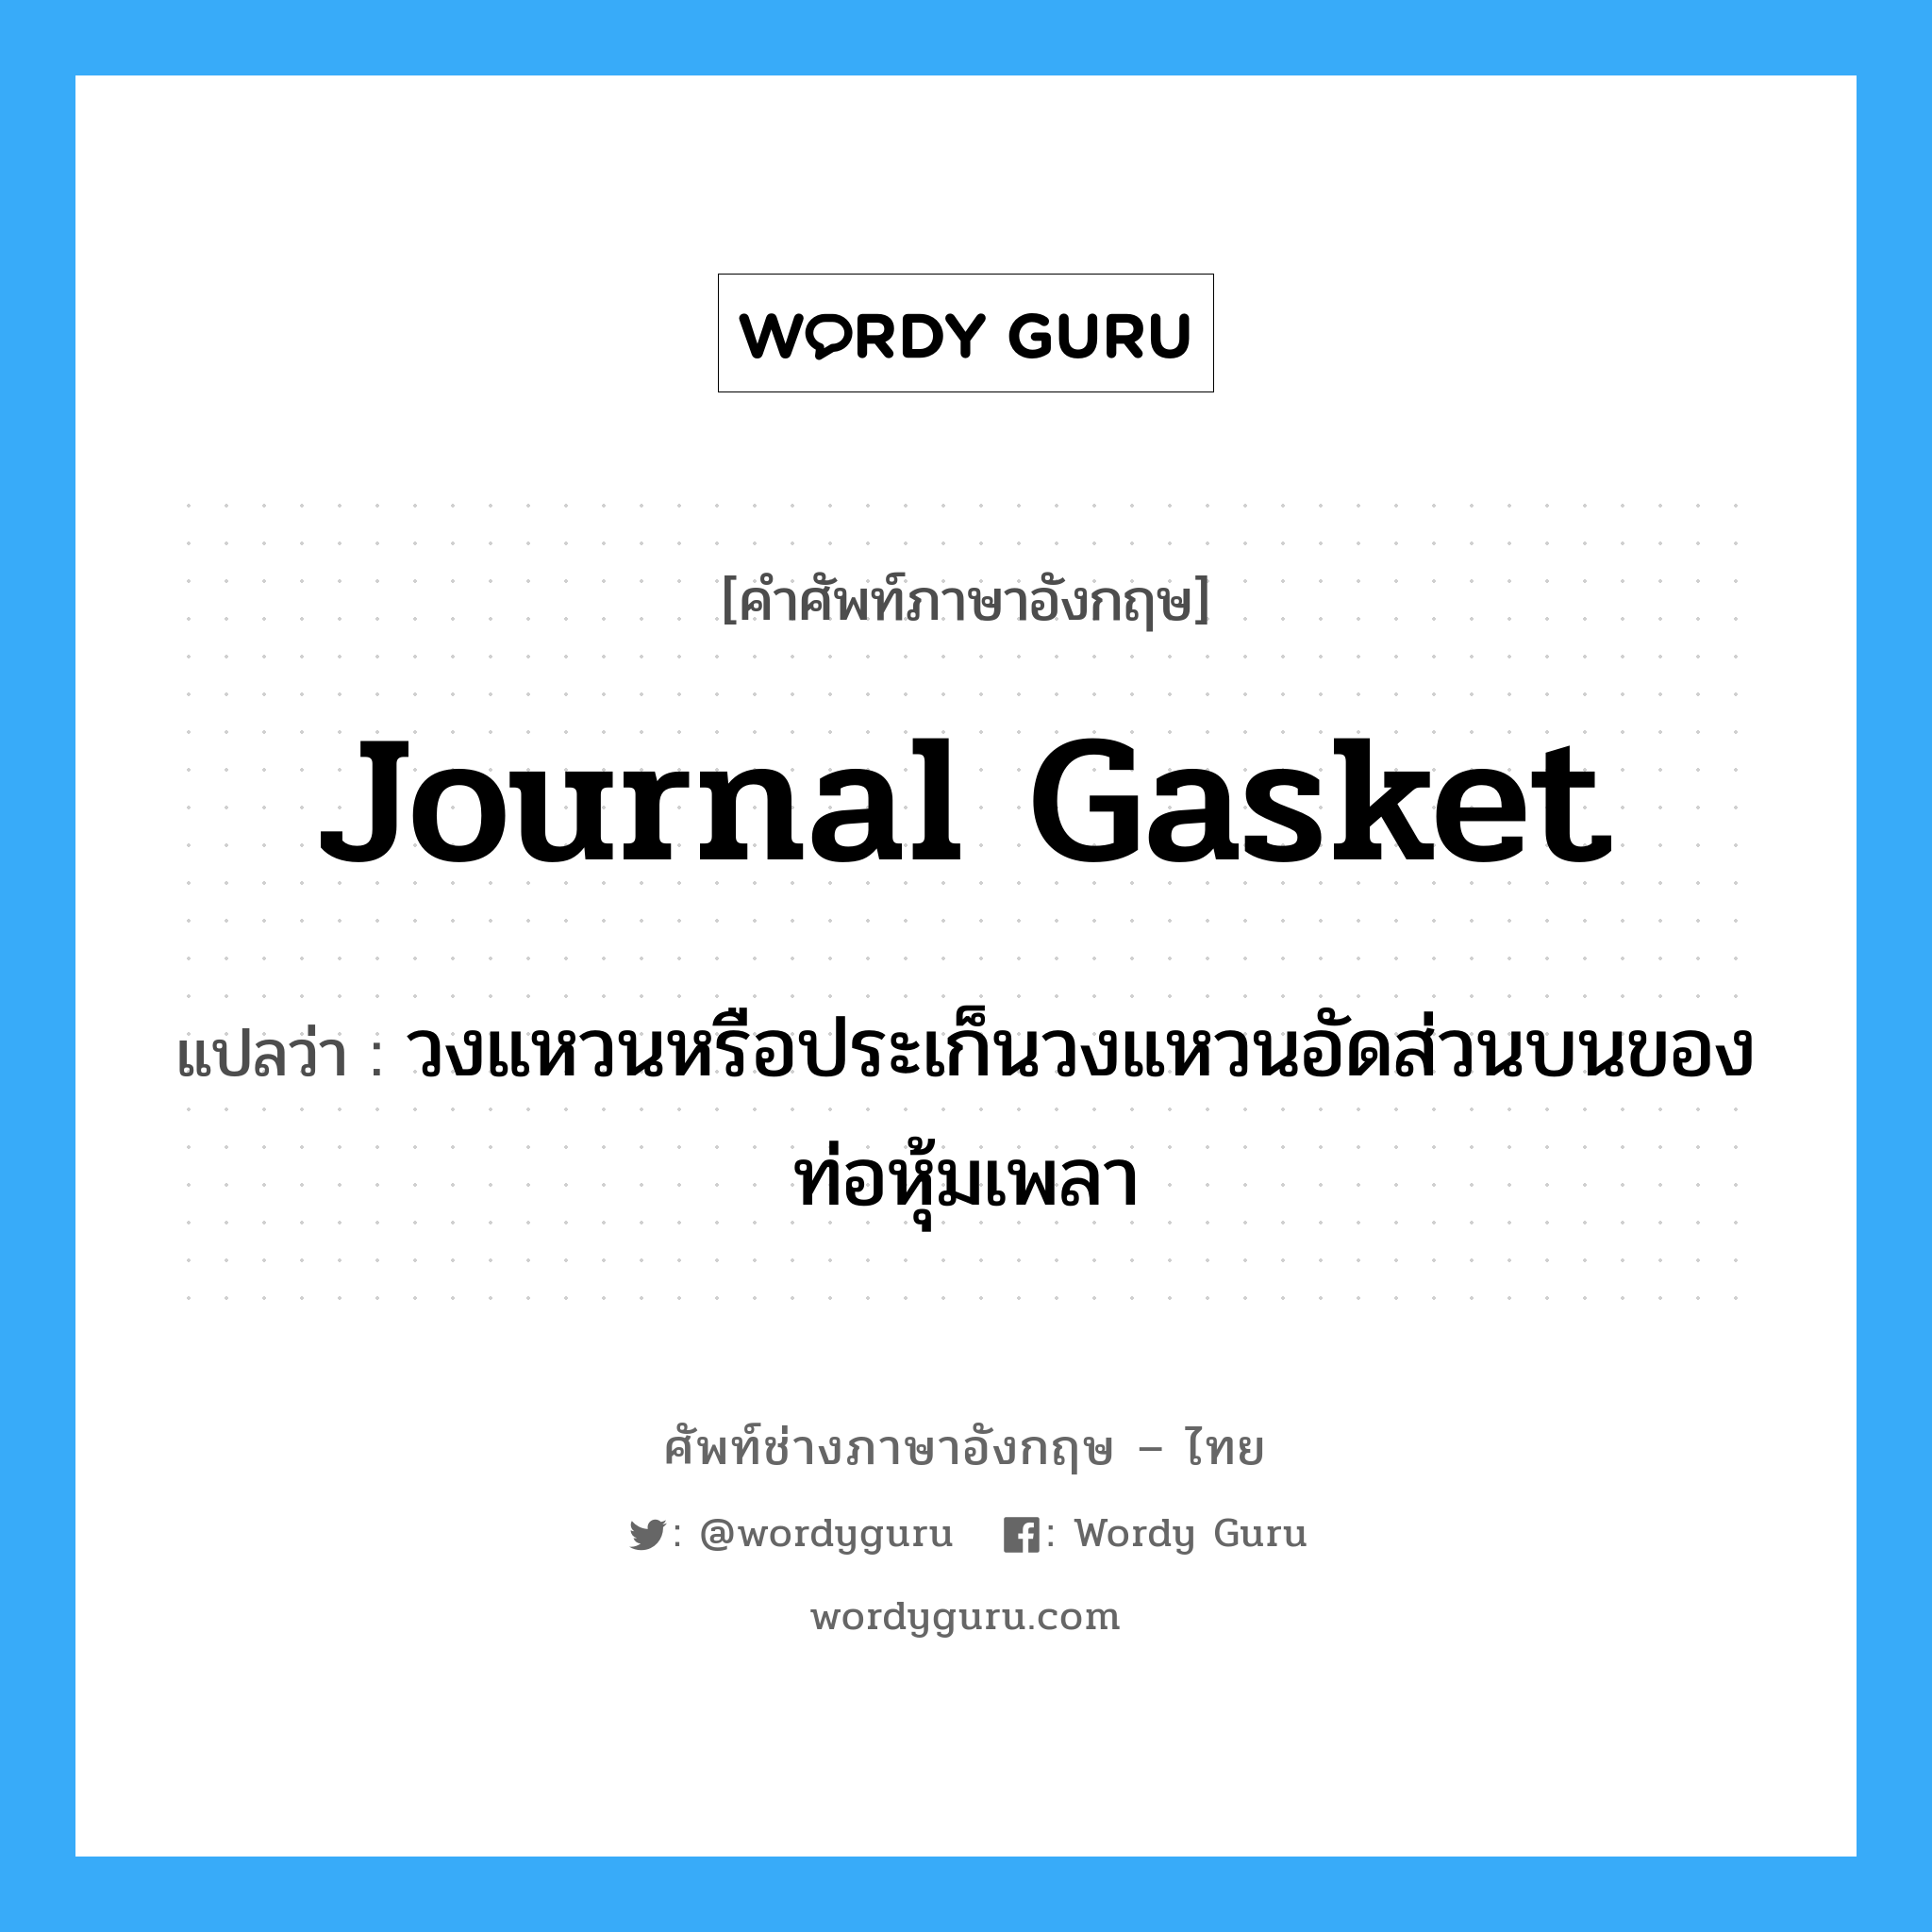 journal gasket แปลว่า?, คำศัพท์ช่างภาษาอังกฤษ - ไทย journal gasket คำศัพท์ภาษาอังกฤษ journal gasket แปลว่า วงแหวนหรือประเก็นวงแหวนอัดส่วนบนของท่อหุ้มเพลา